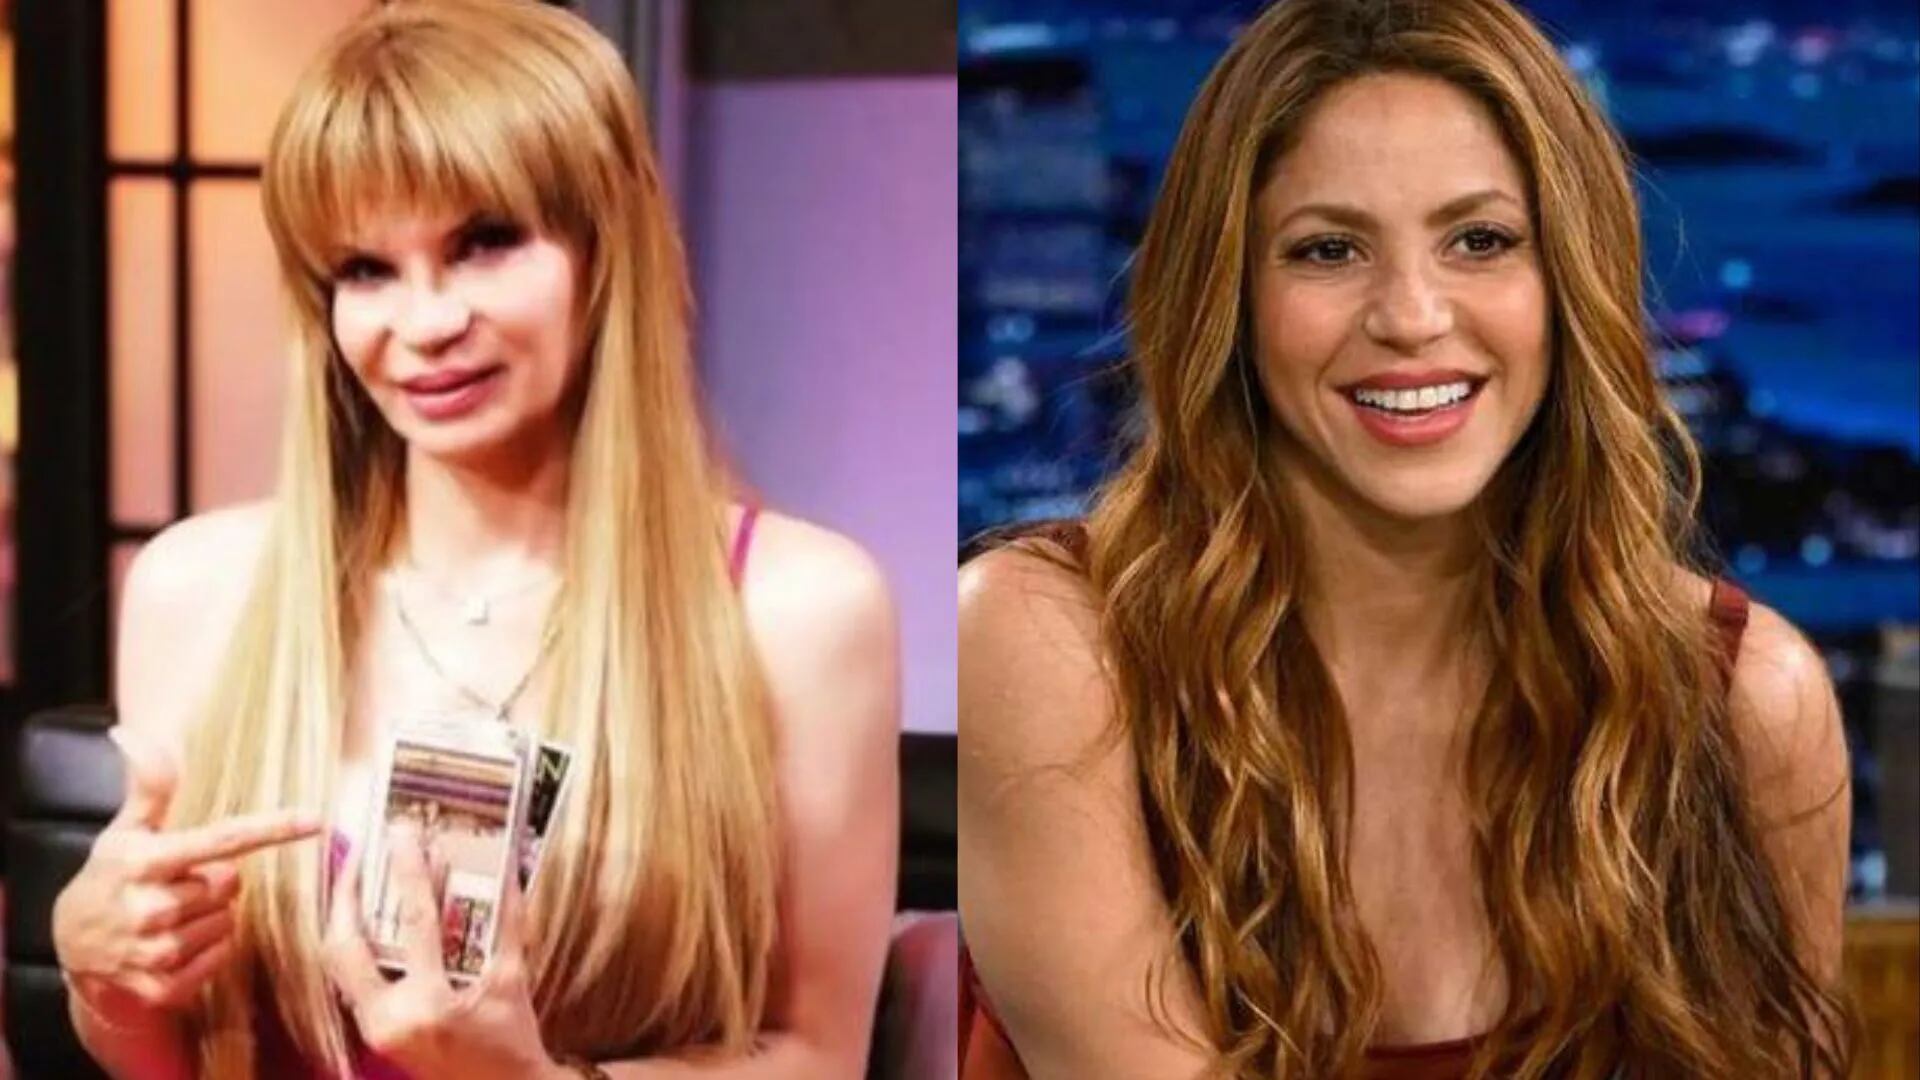 La alarmante advertencia de Mhoni Vidente a Shakira tras predecir la ruptura de Piqué: “Cuestiones de fraudes” 